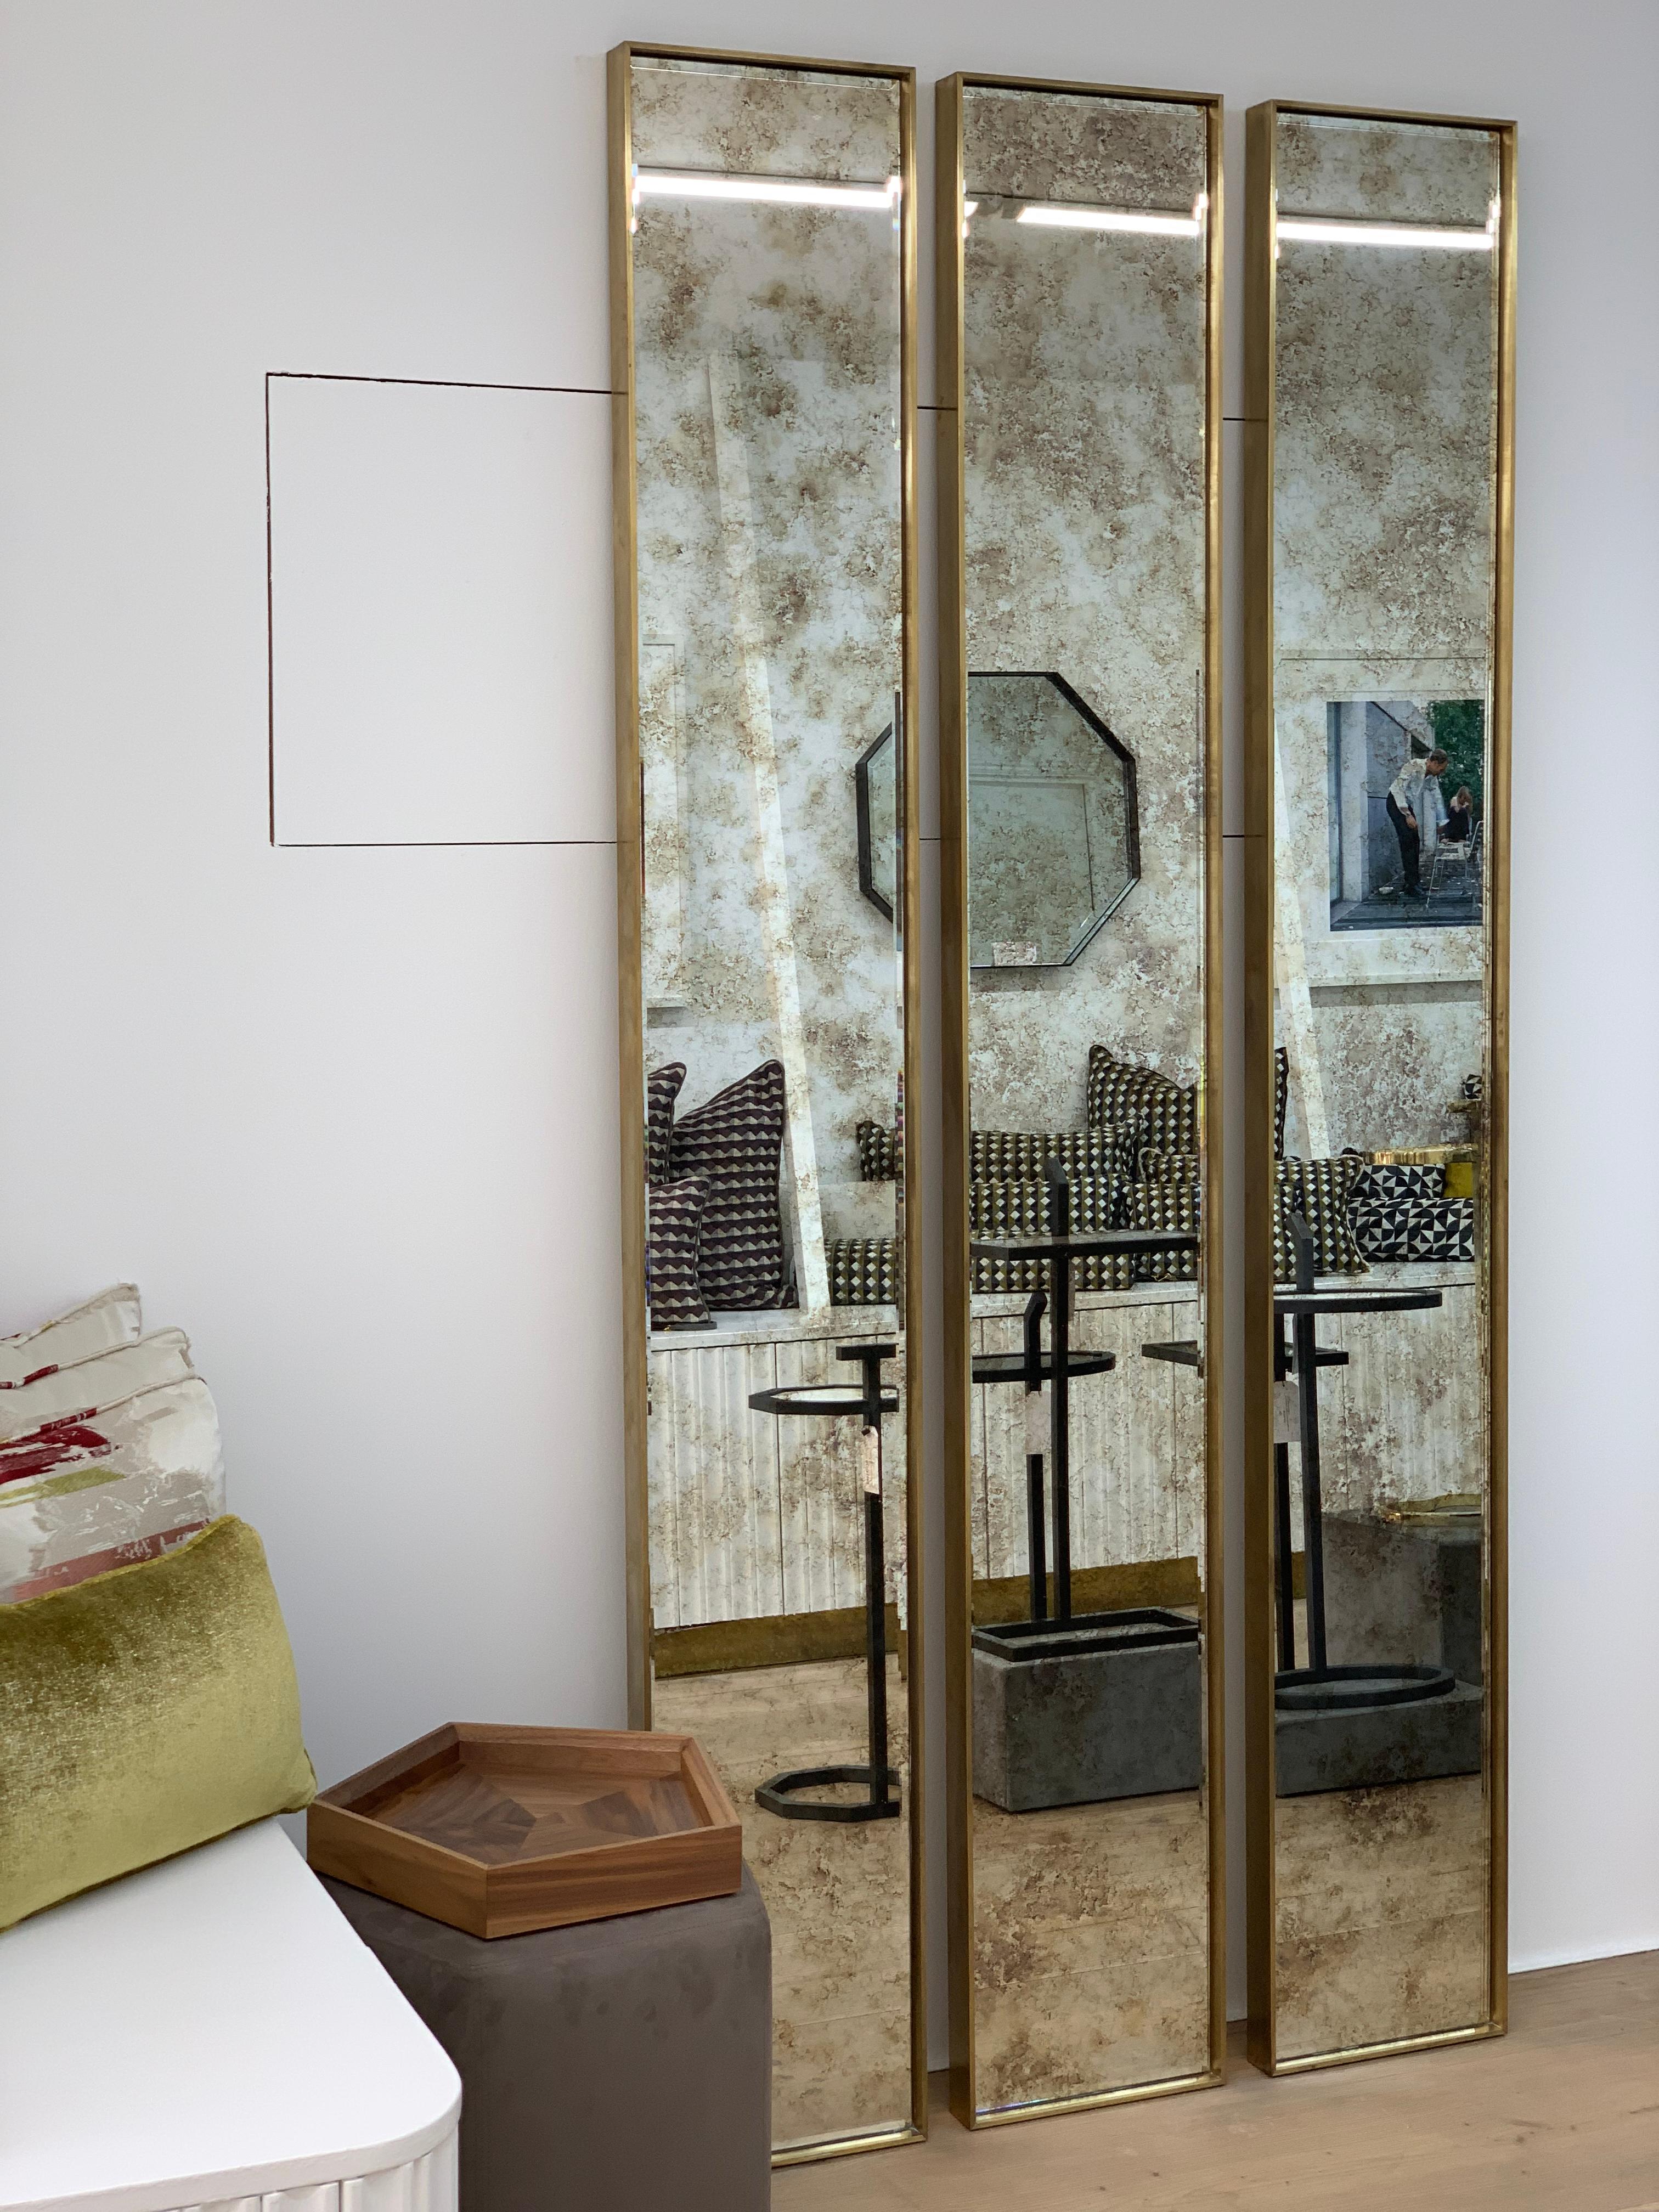 Voici le Slim Mirror de CASA BOTELHO - une pièce de décoration luxueuse et masculine conçue pour faire une déclaration audacieuse. D'une hauteur de 210 cm, ce miroir présente un cadre exagéré qui ajoute une touche de drame et de sophistication à